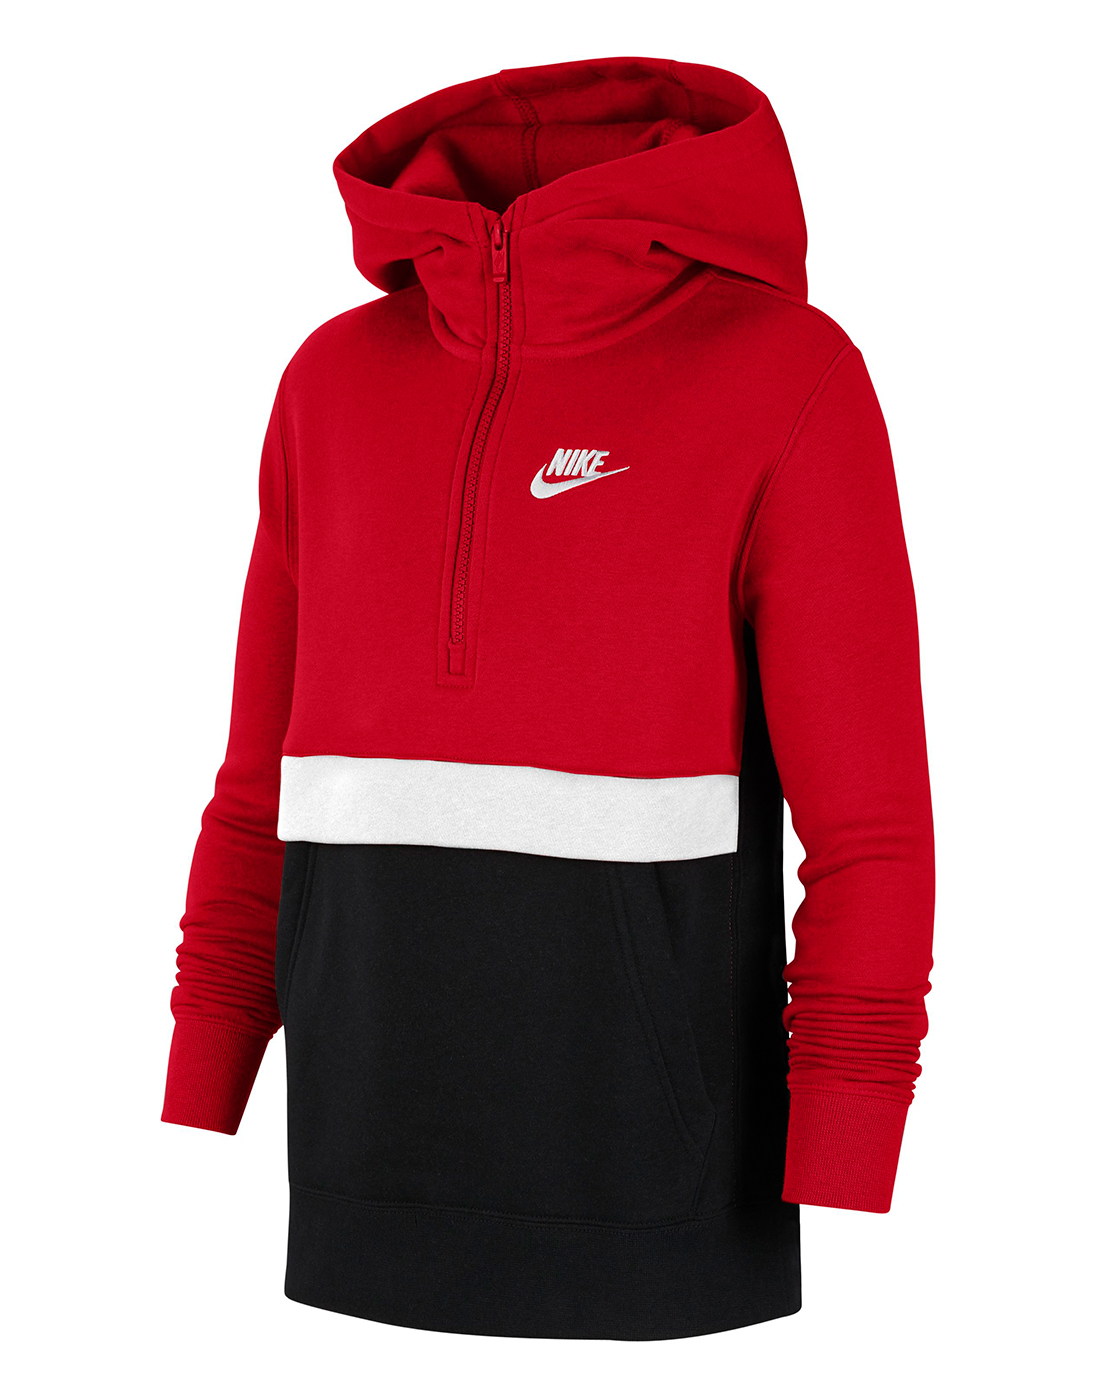 Nike Older Boys Half Zip Hoodie - Red | Life Style Sports IE